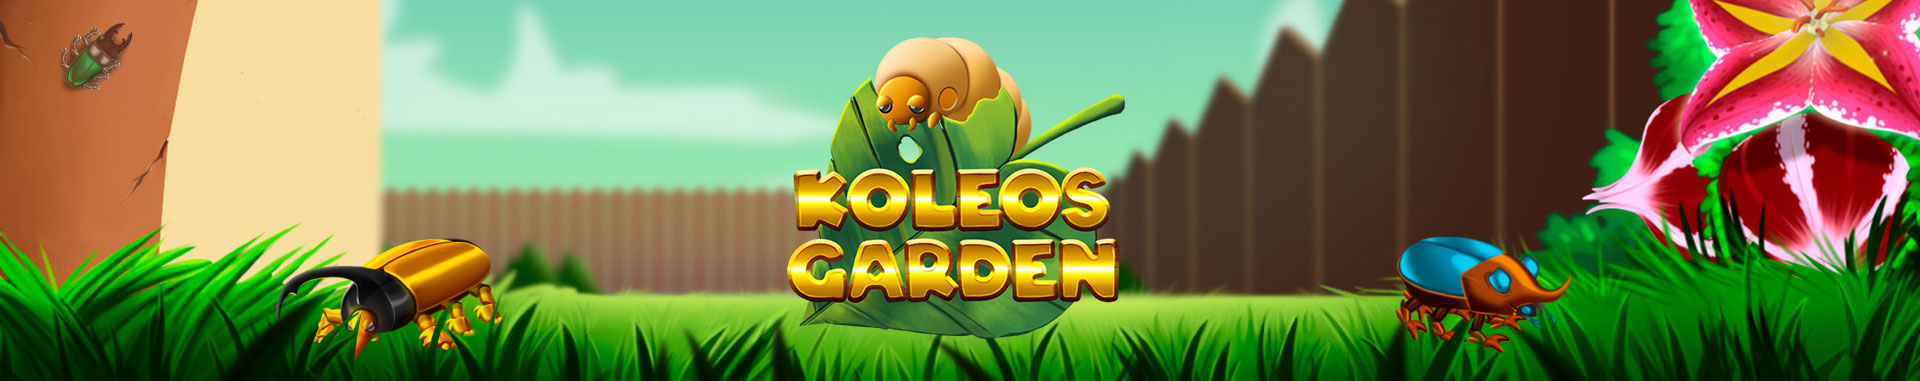 Tragaperras Online Koleos Garden